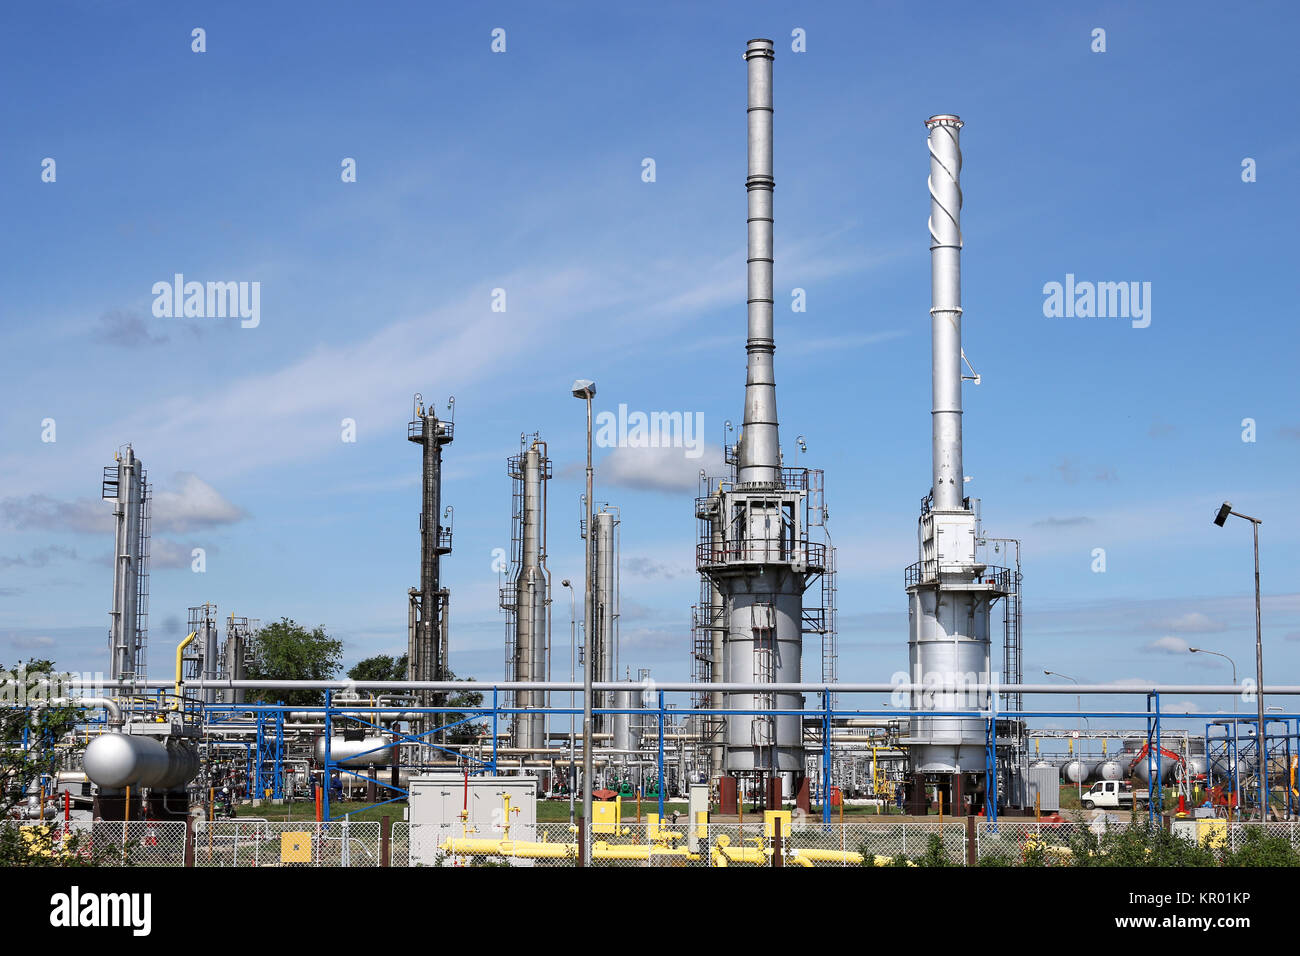 Raffinerie de pétrole avec les travailleurs de l'industrie pétrochimique Banque D'Images